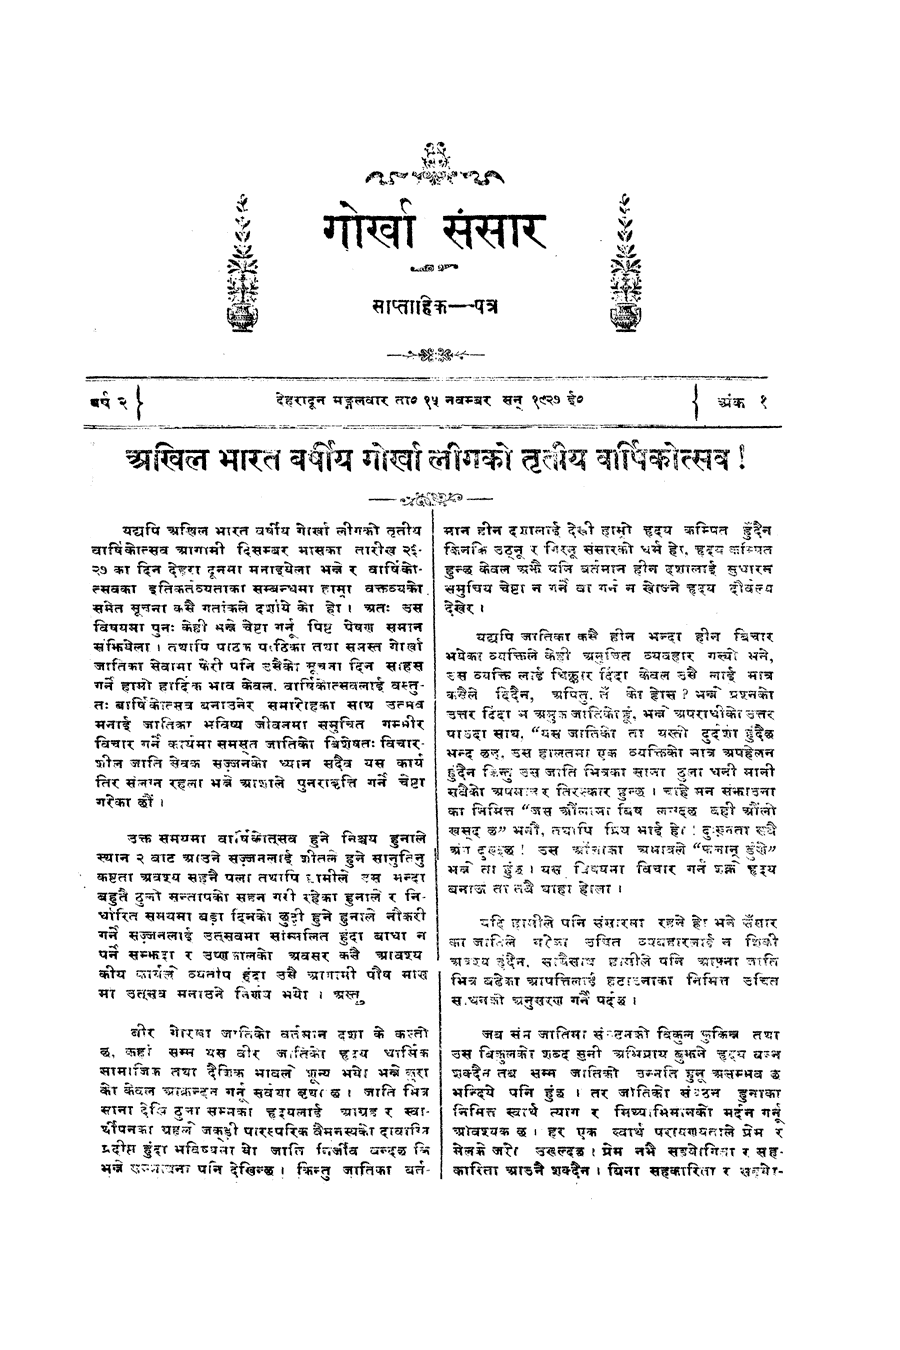 Gorkha Sansar, 15 Nov 1927, page 3